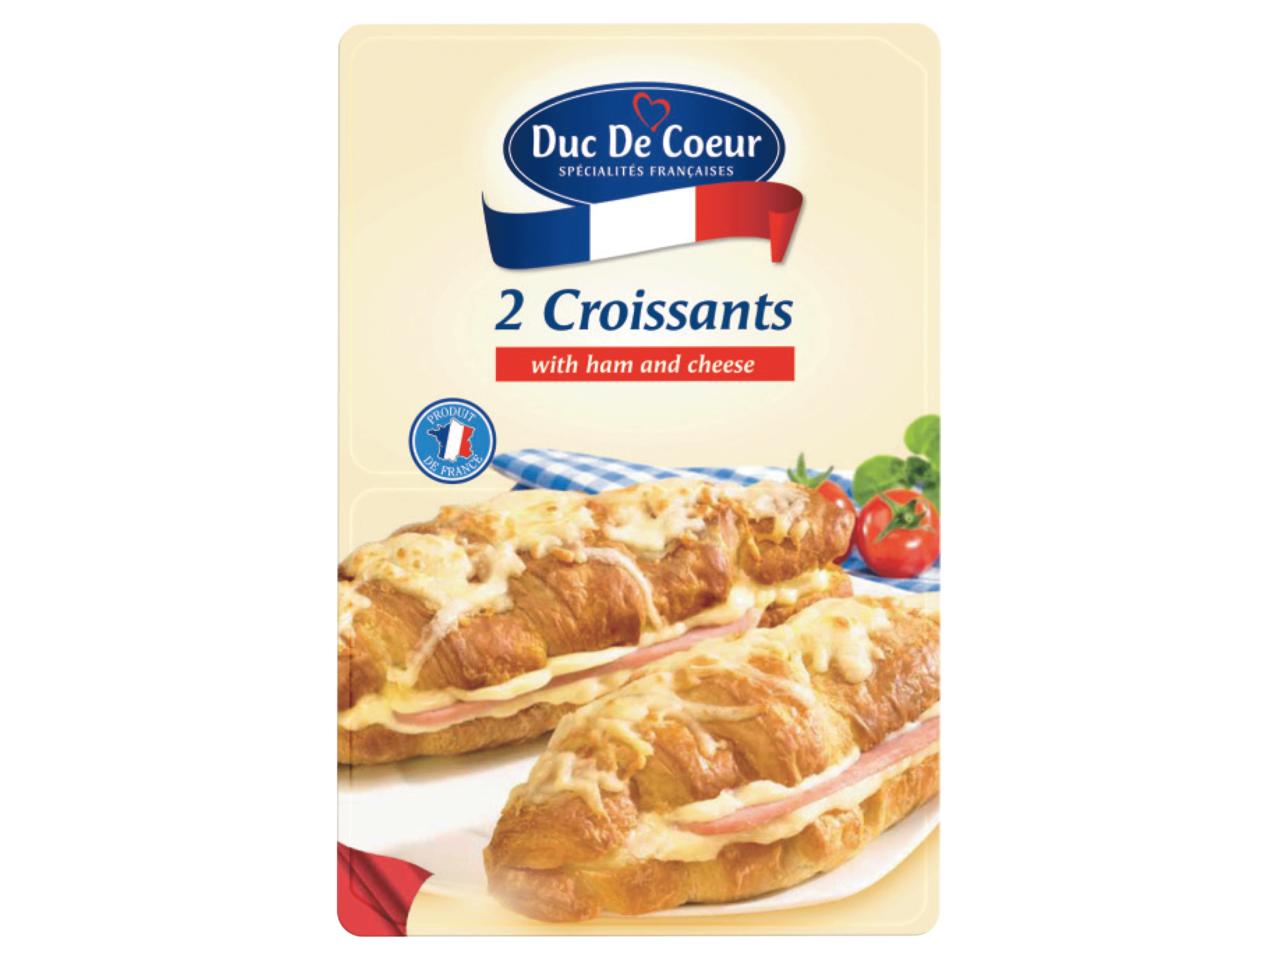 DUC DE COEUR 2 Croissants with Ham & Cheese